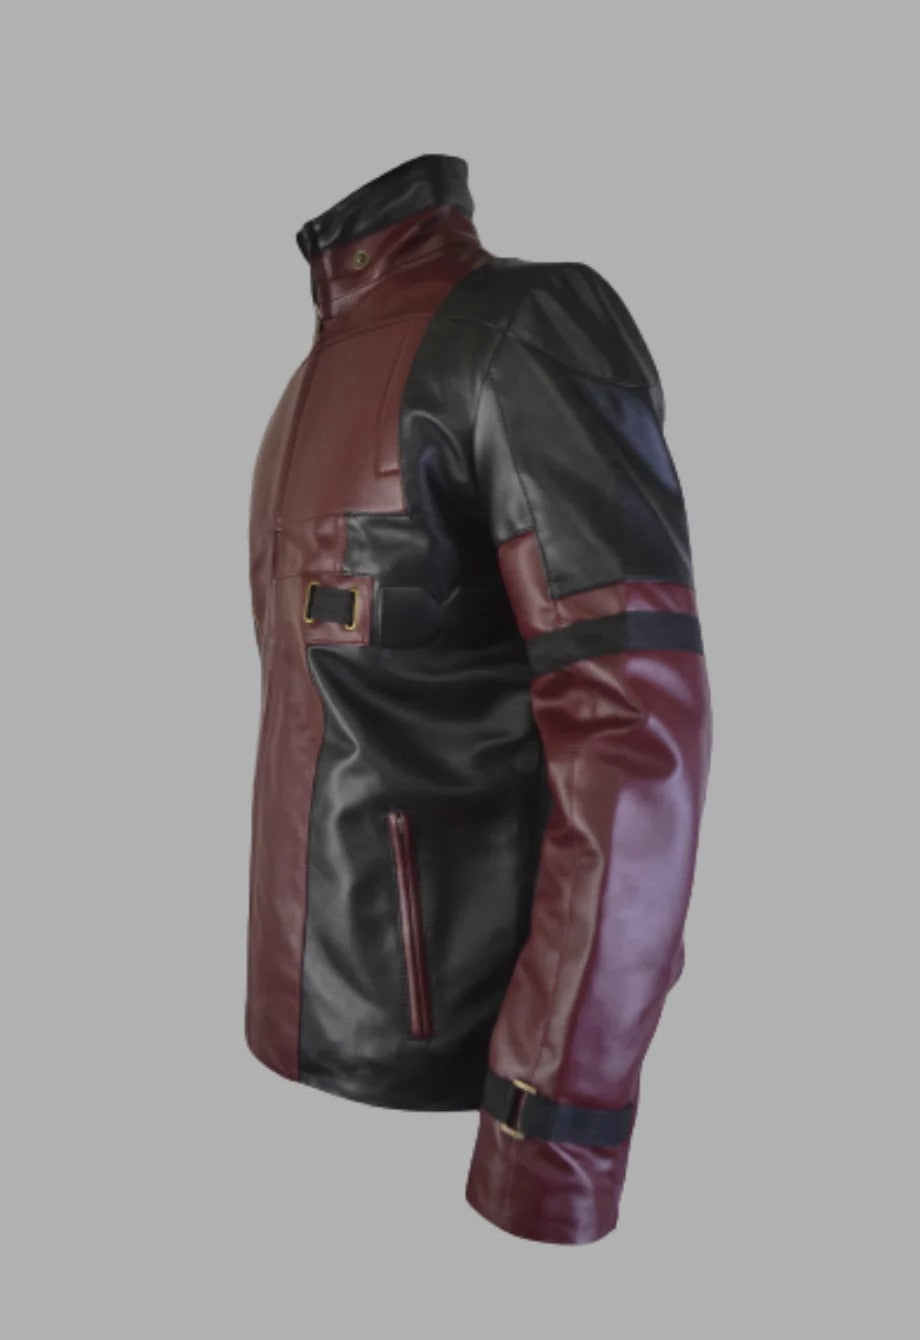 Mens Designer Blend of Red & Black Leather Jacket